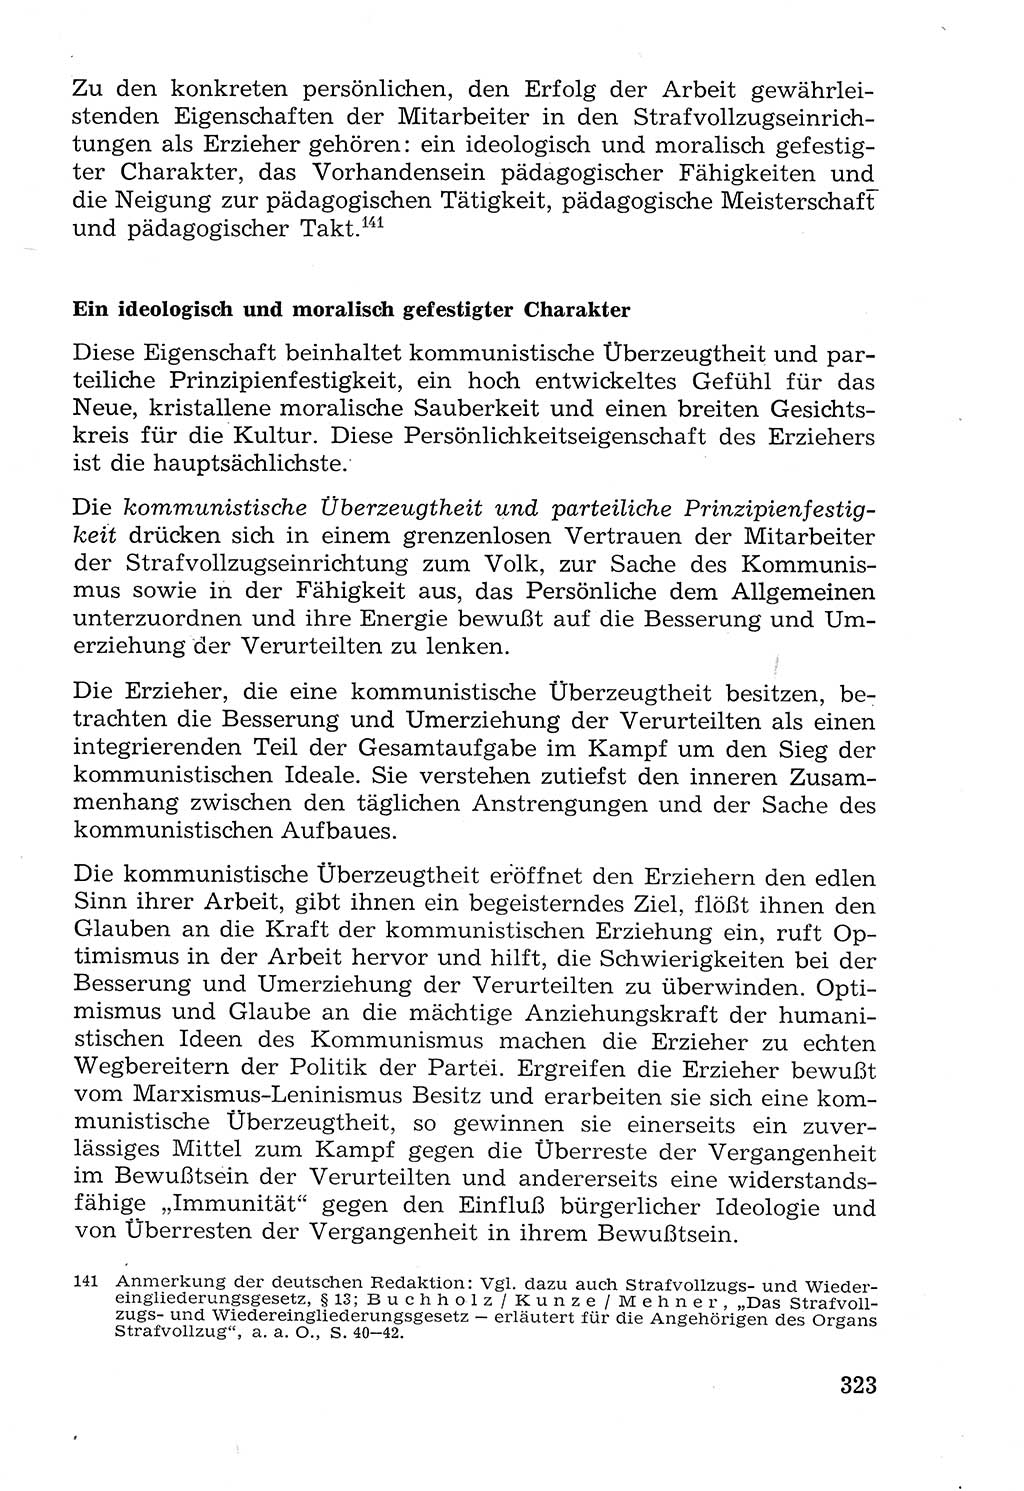 Lehrbuch der Strafvollzugspädagogik [Deutsche Demokratische Republik (DDR)] 1969, Seite 323 (Lb. SV-Pd. DDR 1969, S. 323)